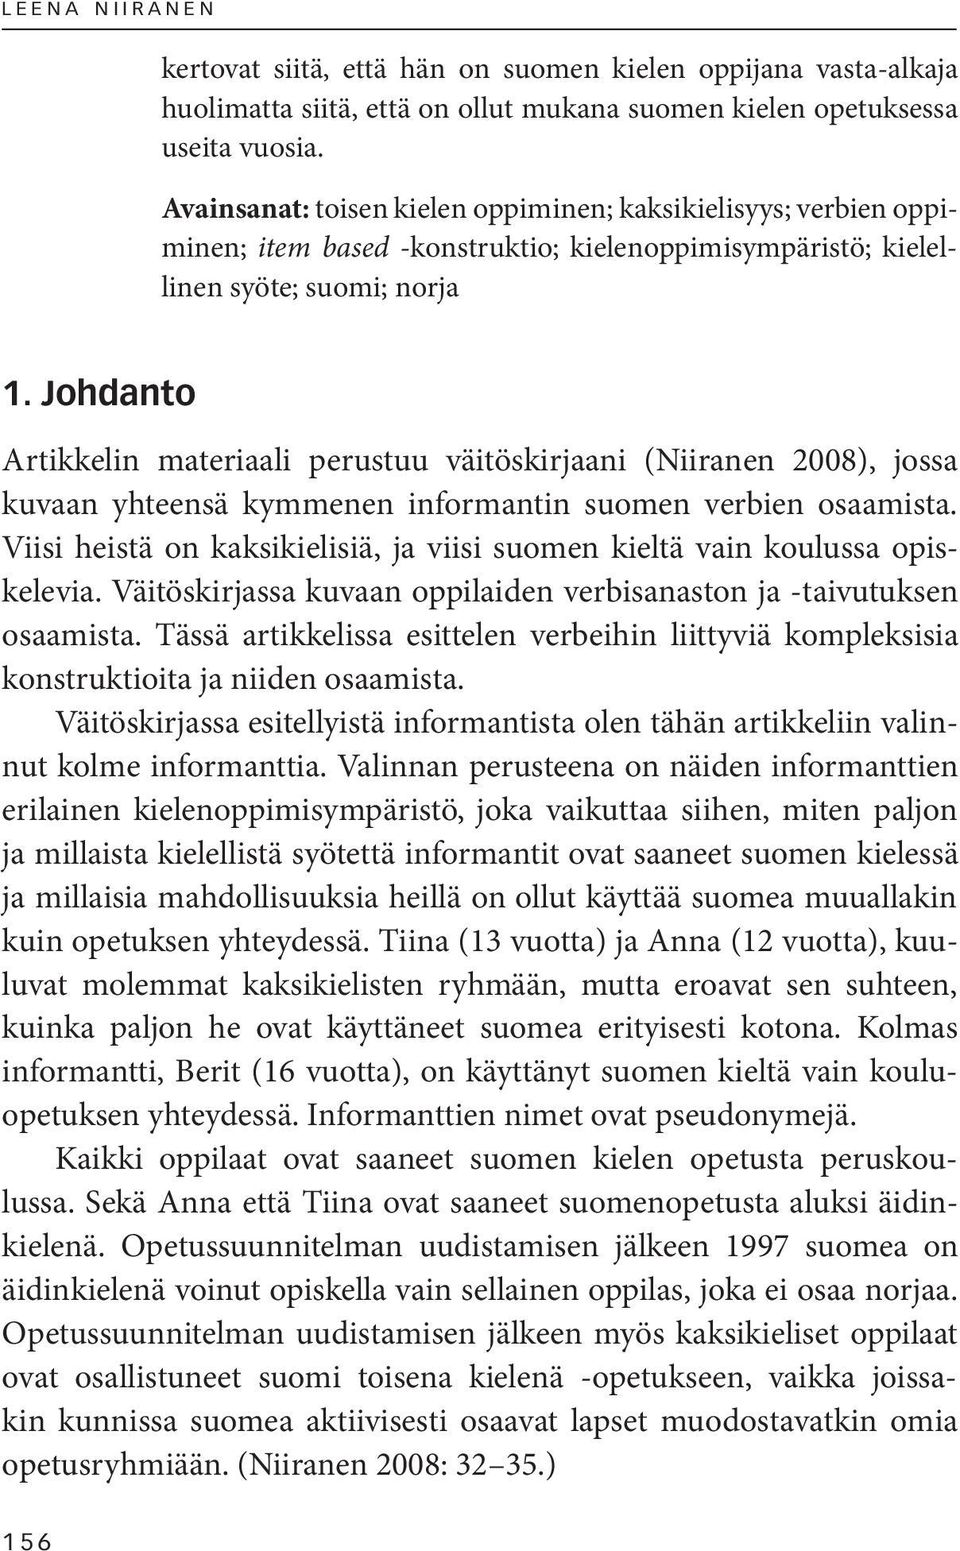 Johdanto Artikkelin materiaali perustuu väitöskirjaani (Niiranen 2008), jossa kuvaan yhteensä kymmenen informantin suomen verbien osaamista.